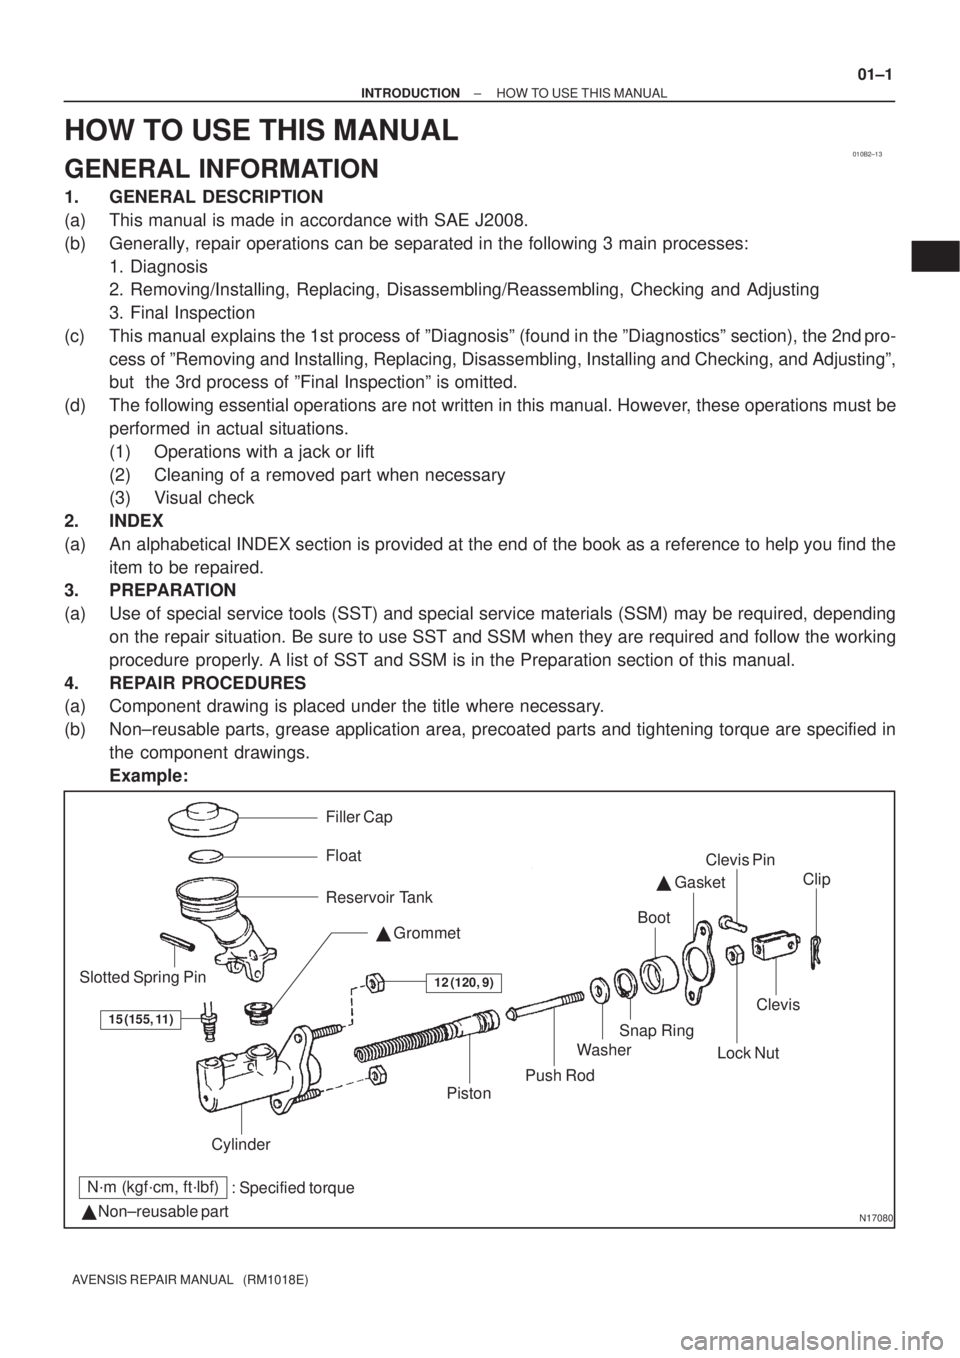 TOYOTA AVENSIS 2003  Service Repair Manual 010B2±13
N17080
Filler Cap
Float
Reservoir Tank Grommet
Clip
Slotted Spring Pin
: Specified torque
  Non±reusable part Cylinder
Piston
Push Rod
Washer
Snap Ring
Boot

 Gasket
Lock Nut
Clevis Pin
